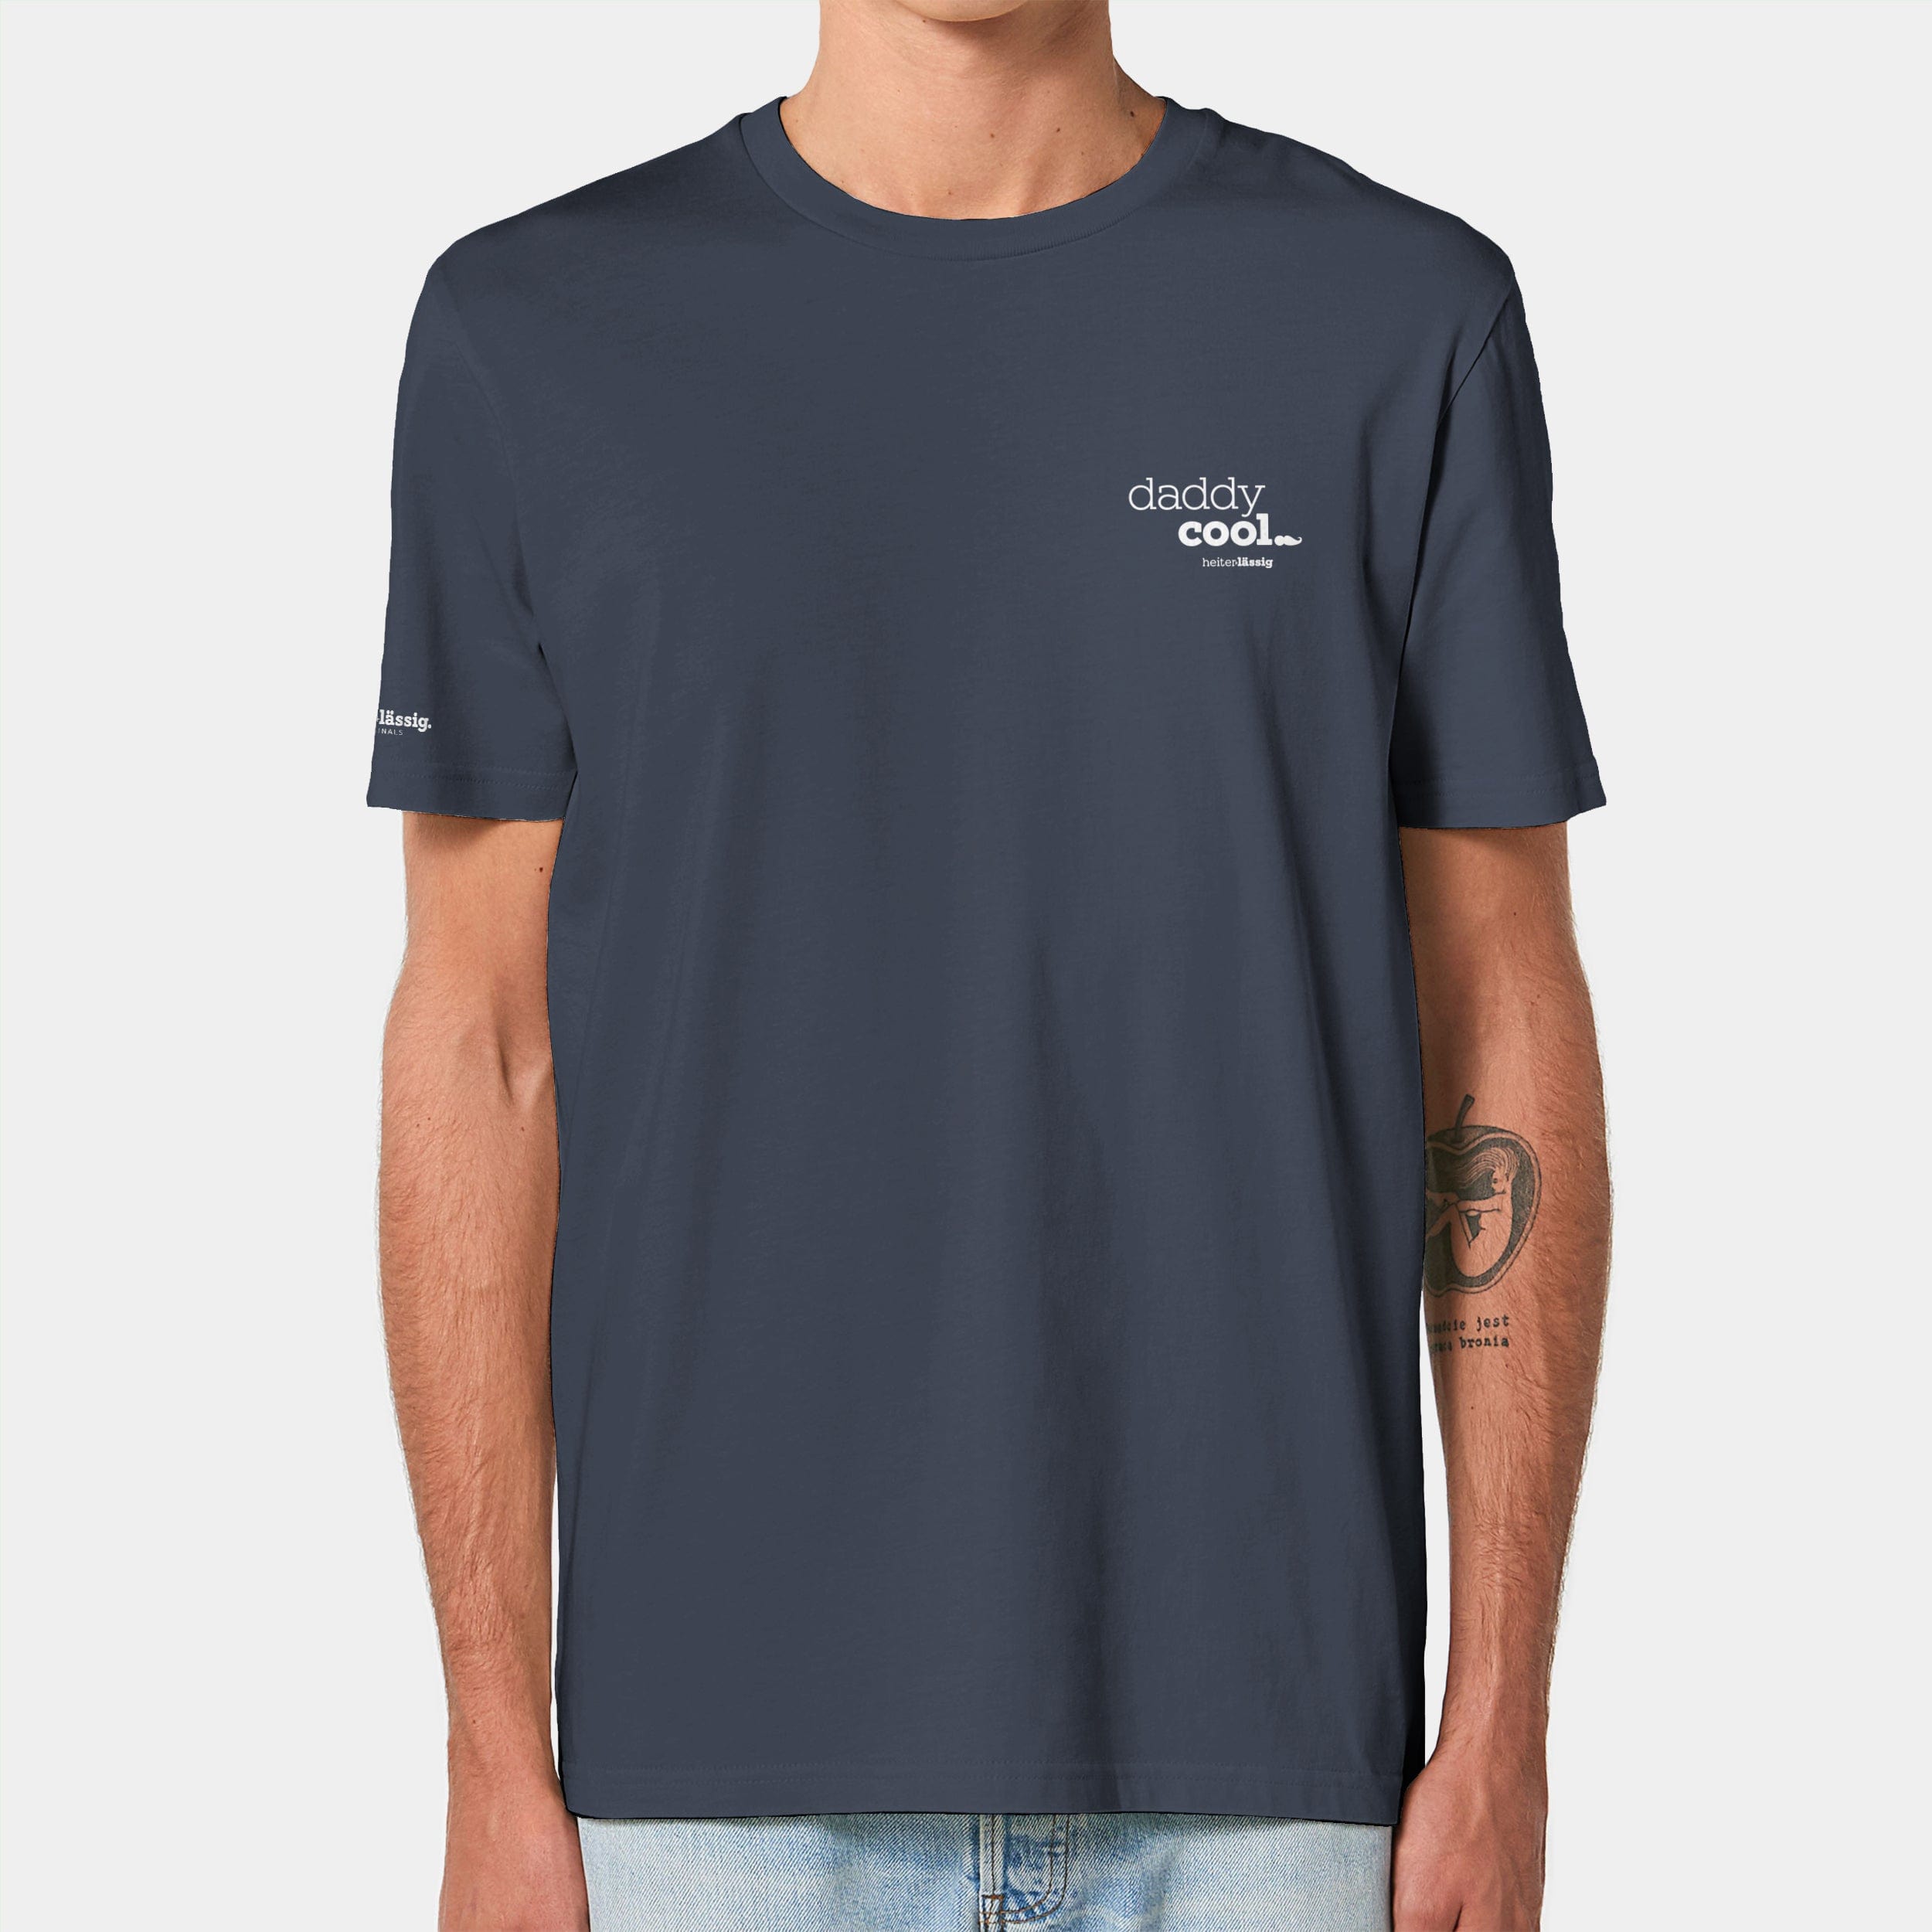 HEITER & LÄSSIG T-Shirt ORIGINAL "daddycool" XXS / india ink grey - aus nachhaltiger und fairer Produktion